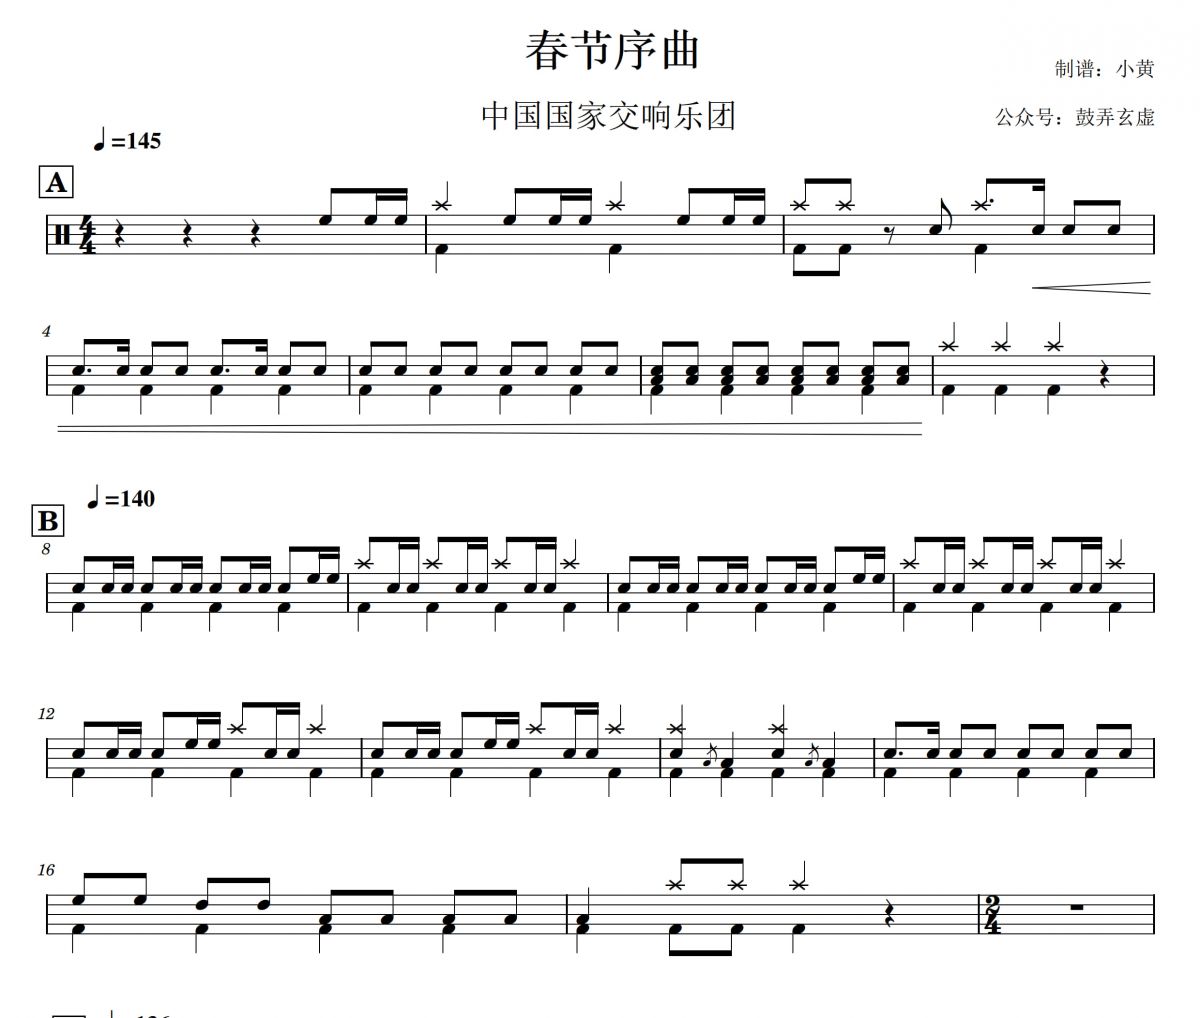 【春节精选】中国国家交响乐团《春节序曲》架子鼓|爵士鼓|鼓谱+动态视频